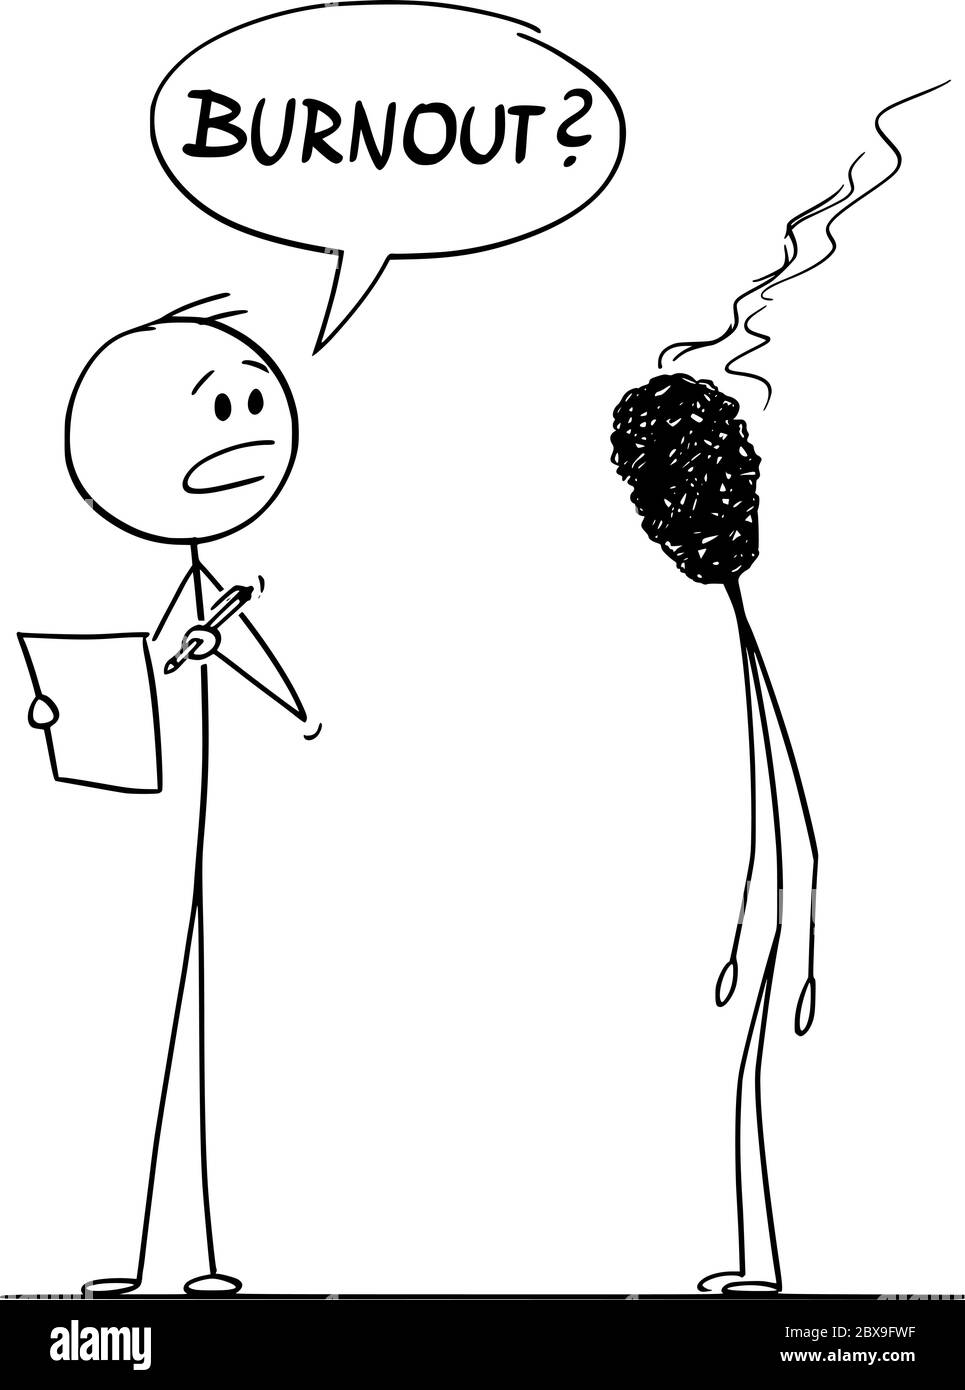 Vektor Cartoon Stick Figur Zeichnung konzeptionelle Illustration von Burnout, müde und gestresst Mann oder Geschäftsmann als ausgebrannten Spiel dargestellt, im Gespräch mit seinem Chef oder Manager. Stock Vektor